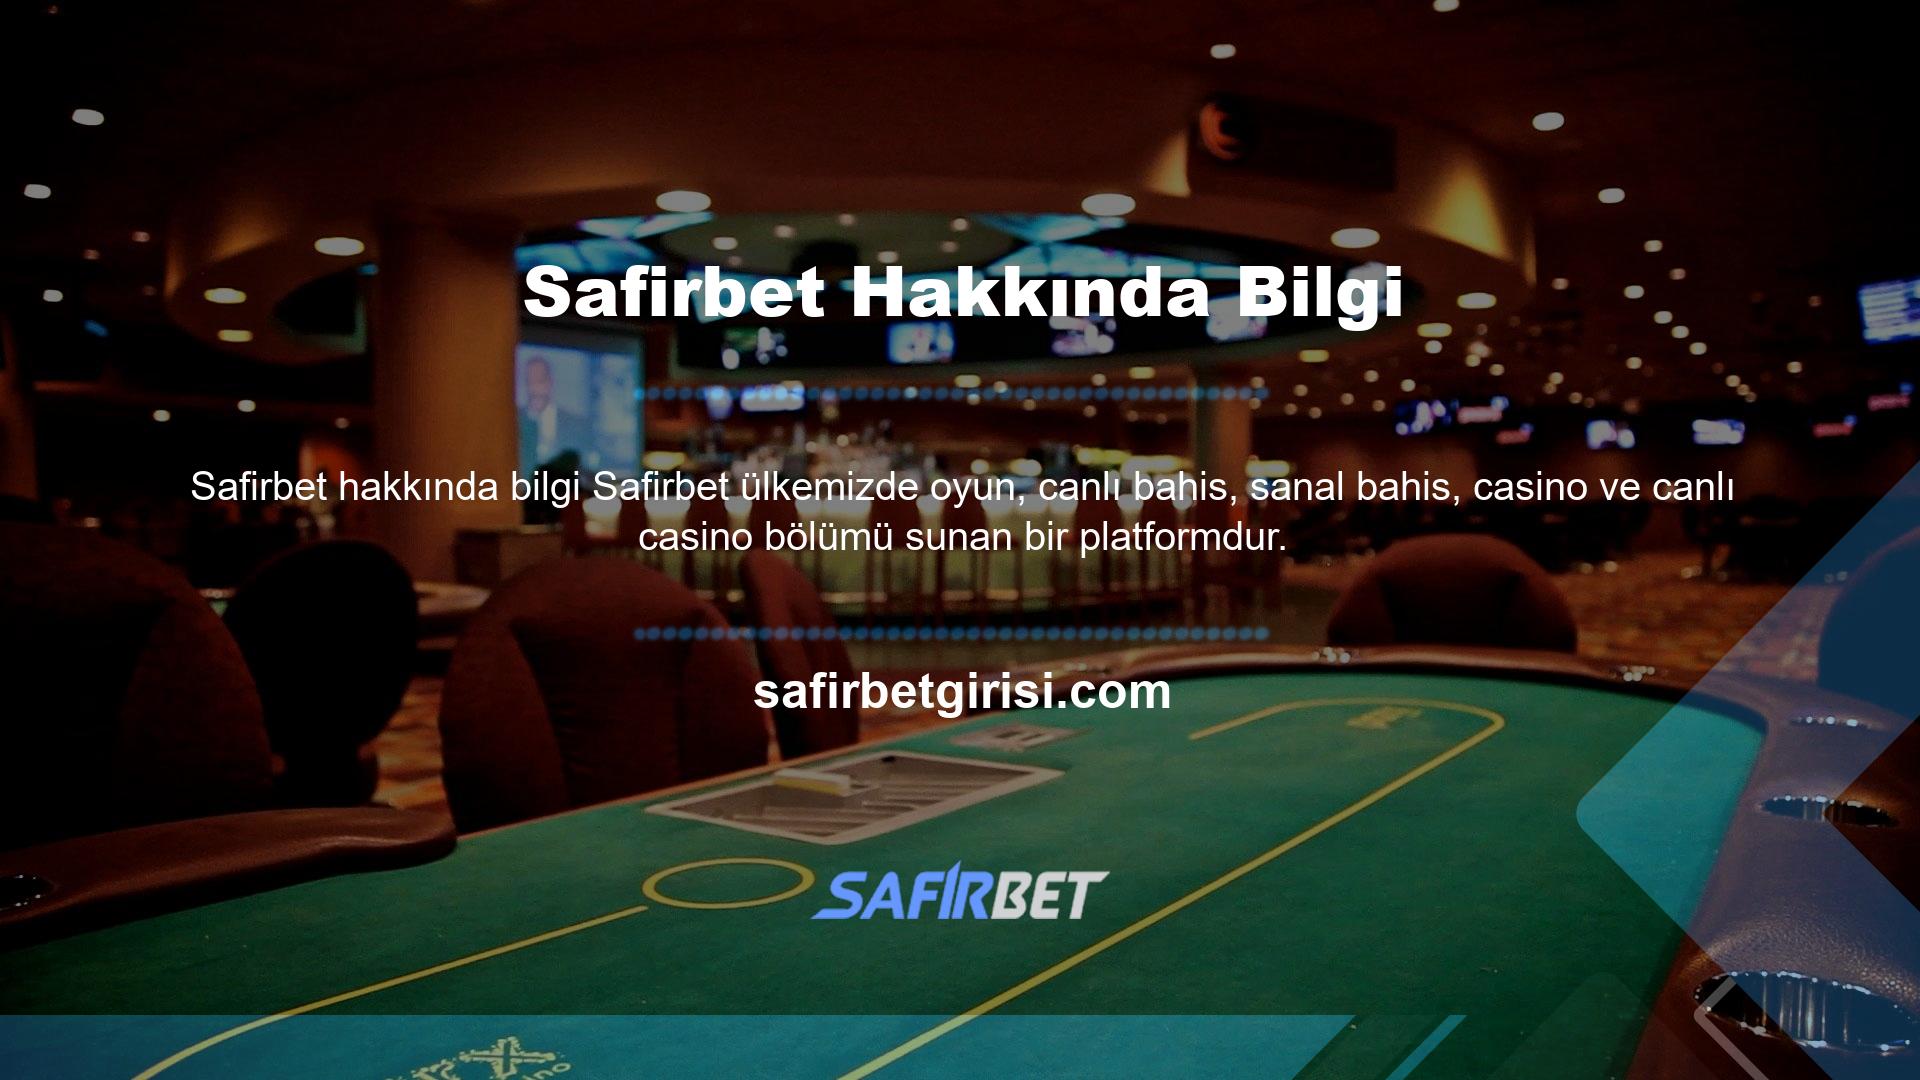 Safirbet casino tutkunları arasında popüler olup casino tutkunları arasında en iyi ve en popüler bahis sitelerinden biridir